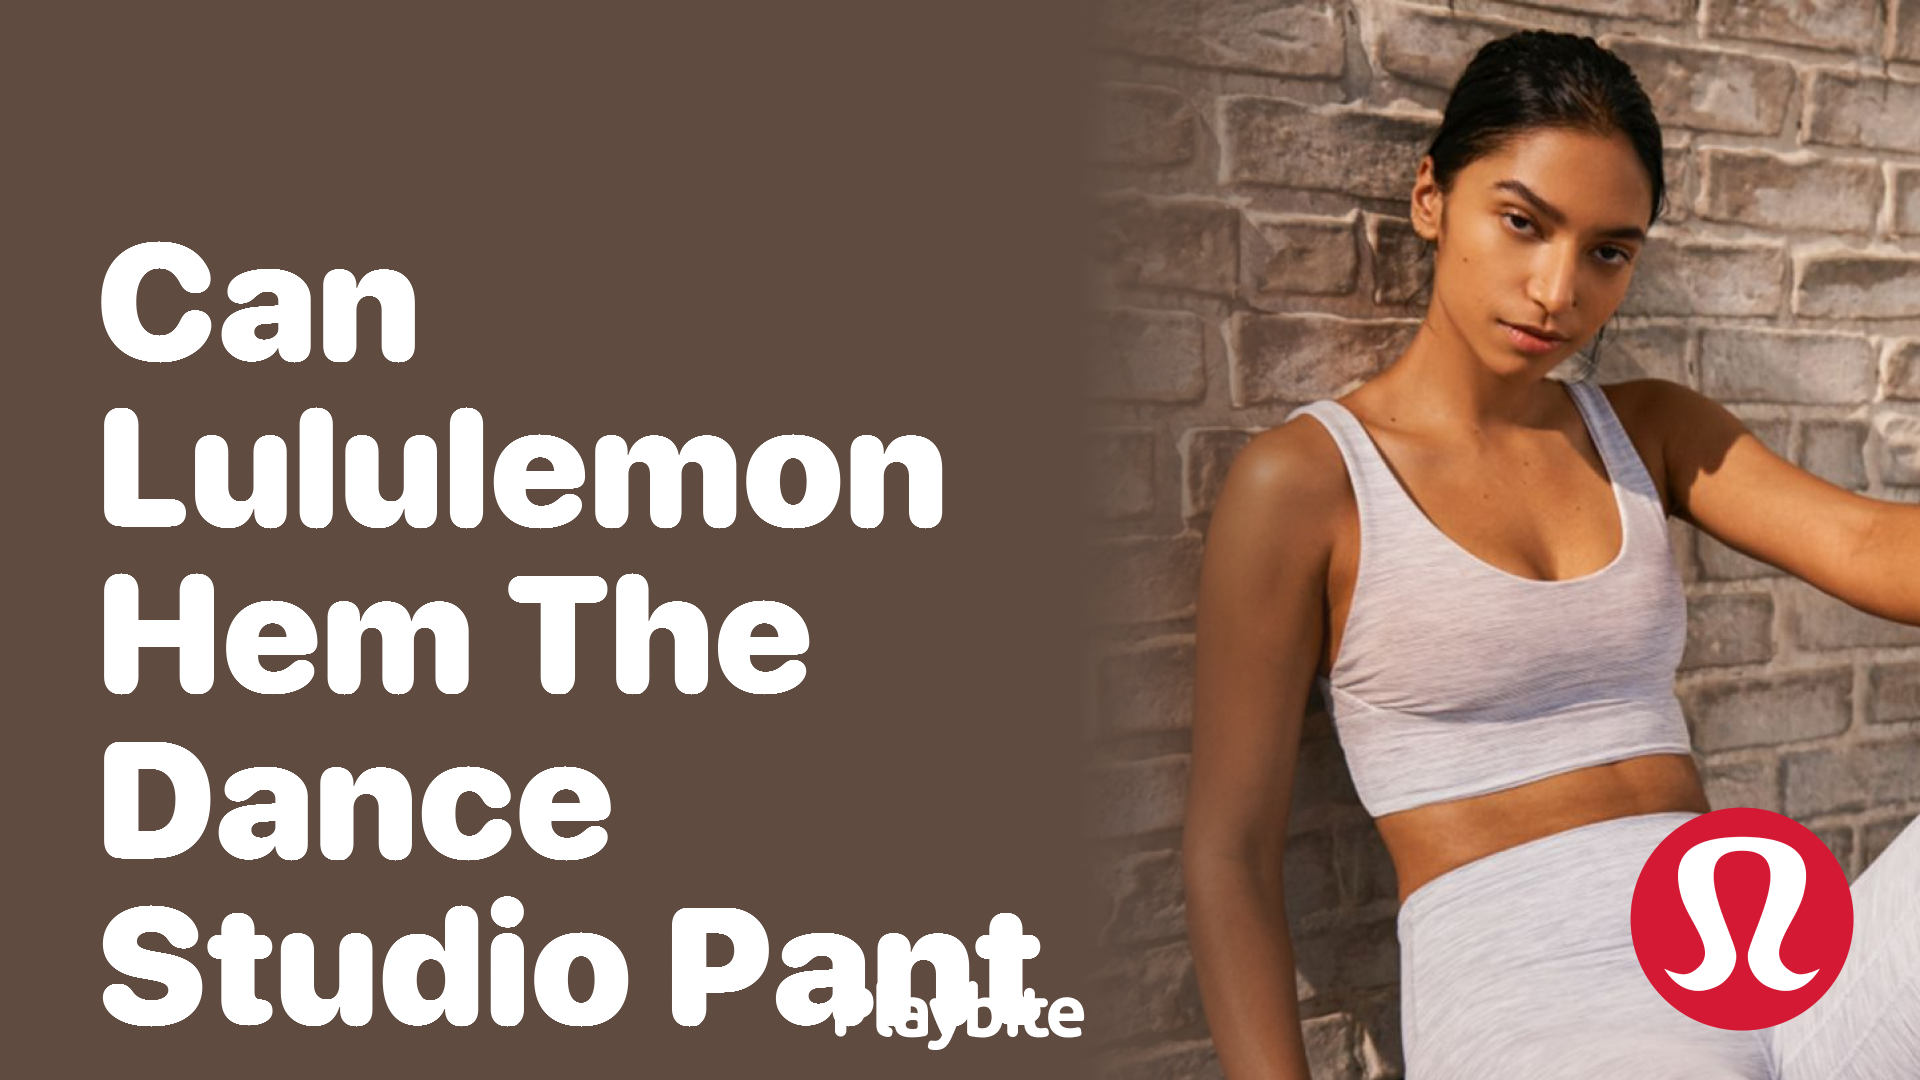 How to Wash Lululemon Dance Studio Pants correctly - Playbite